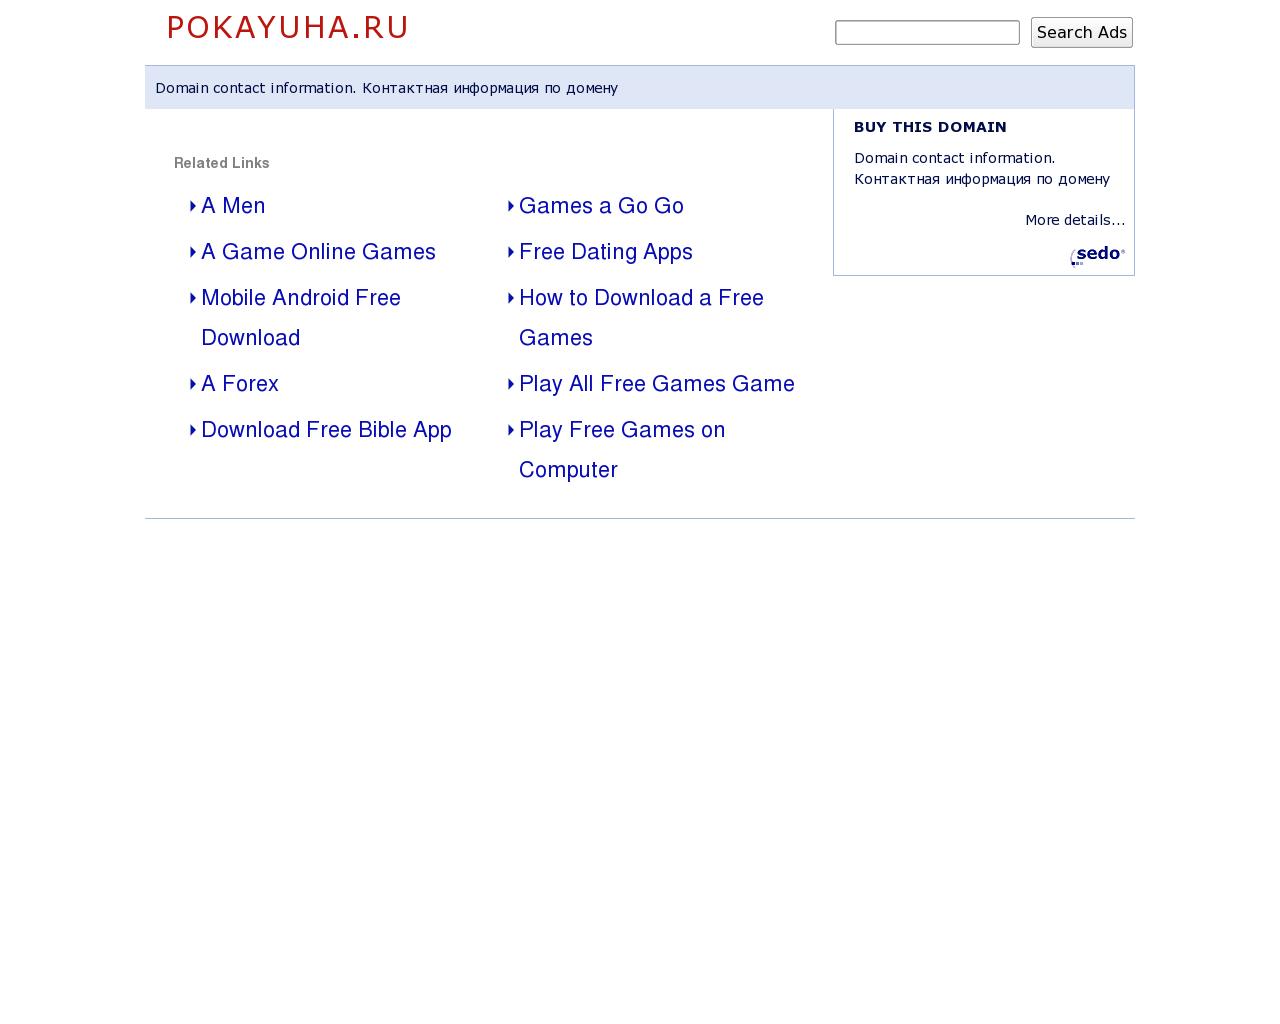 Изображение сайта pokayuha.ru в разрешении 1280x1024